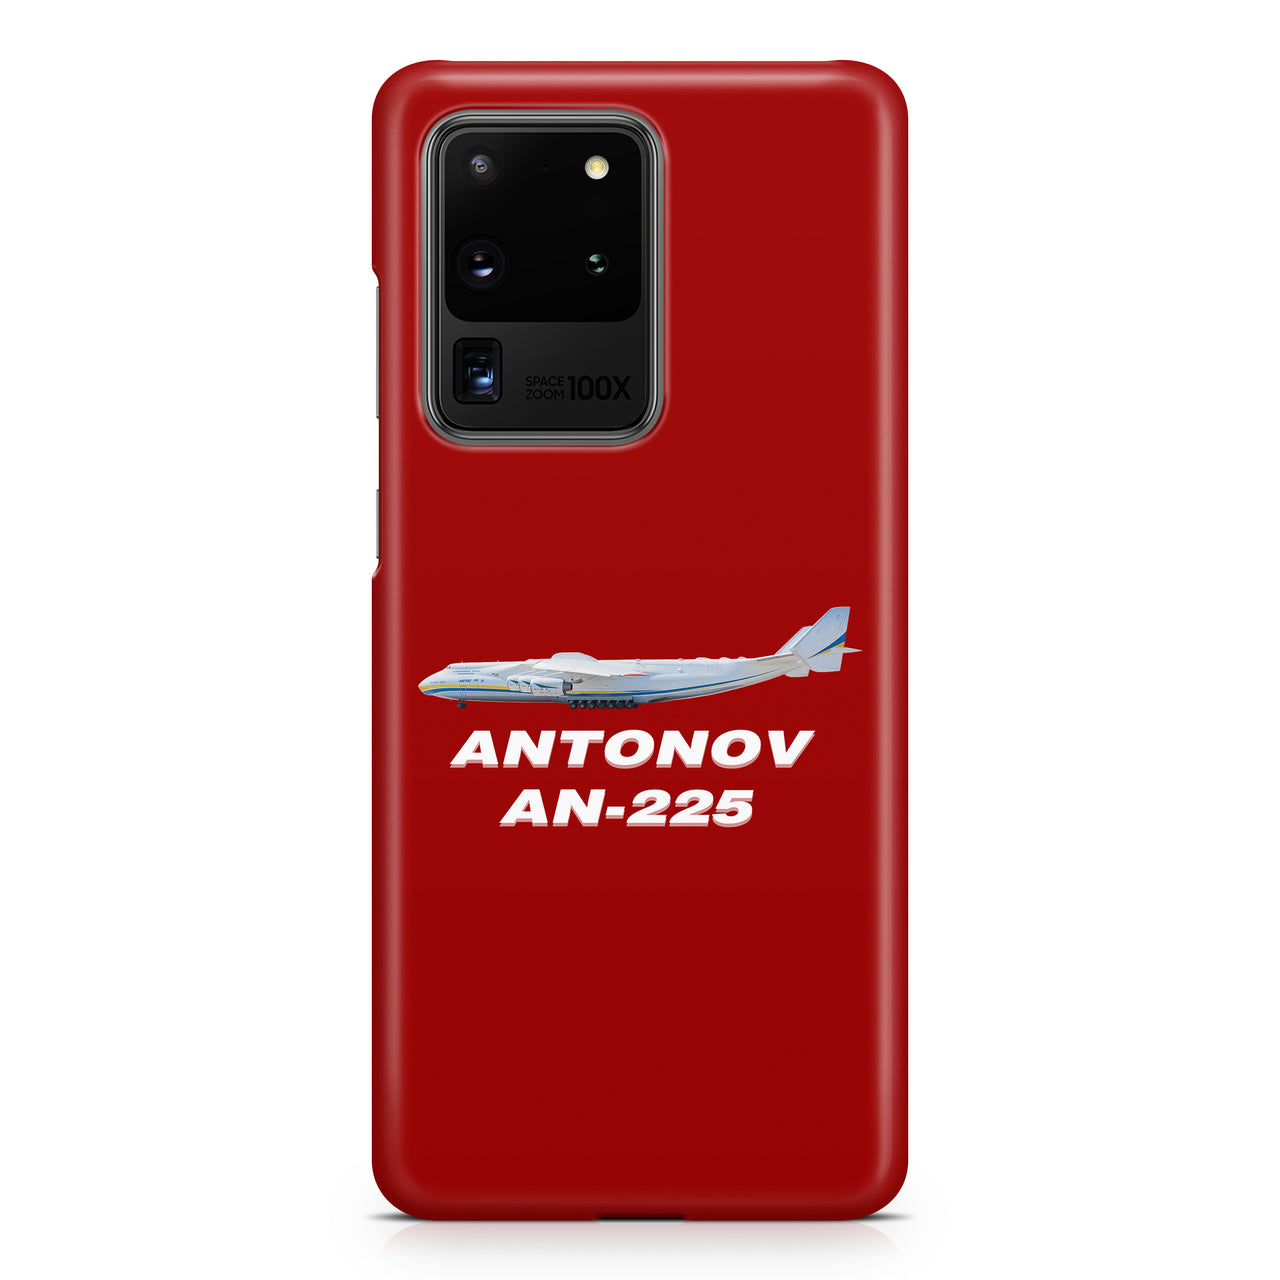 The Antonov AN-225 Samsung A Cases